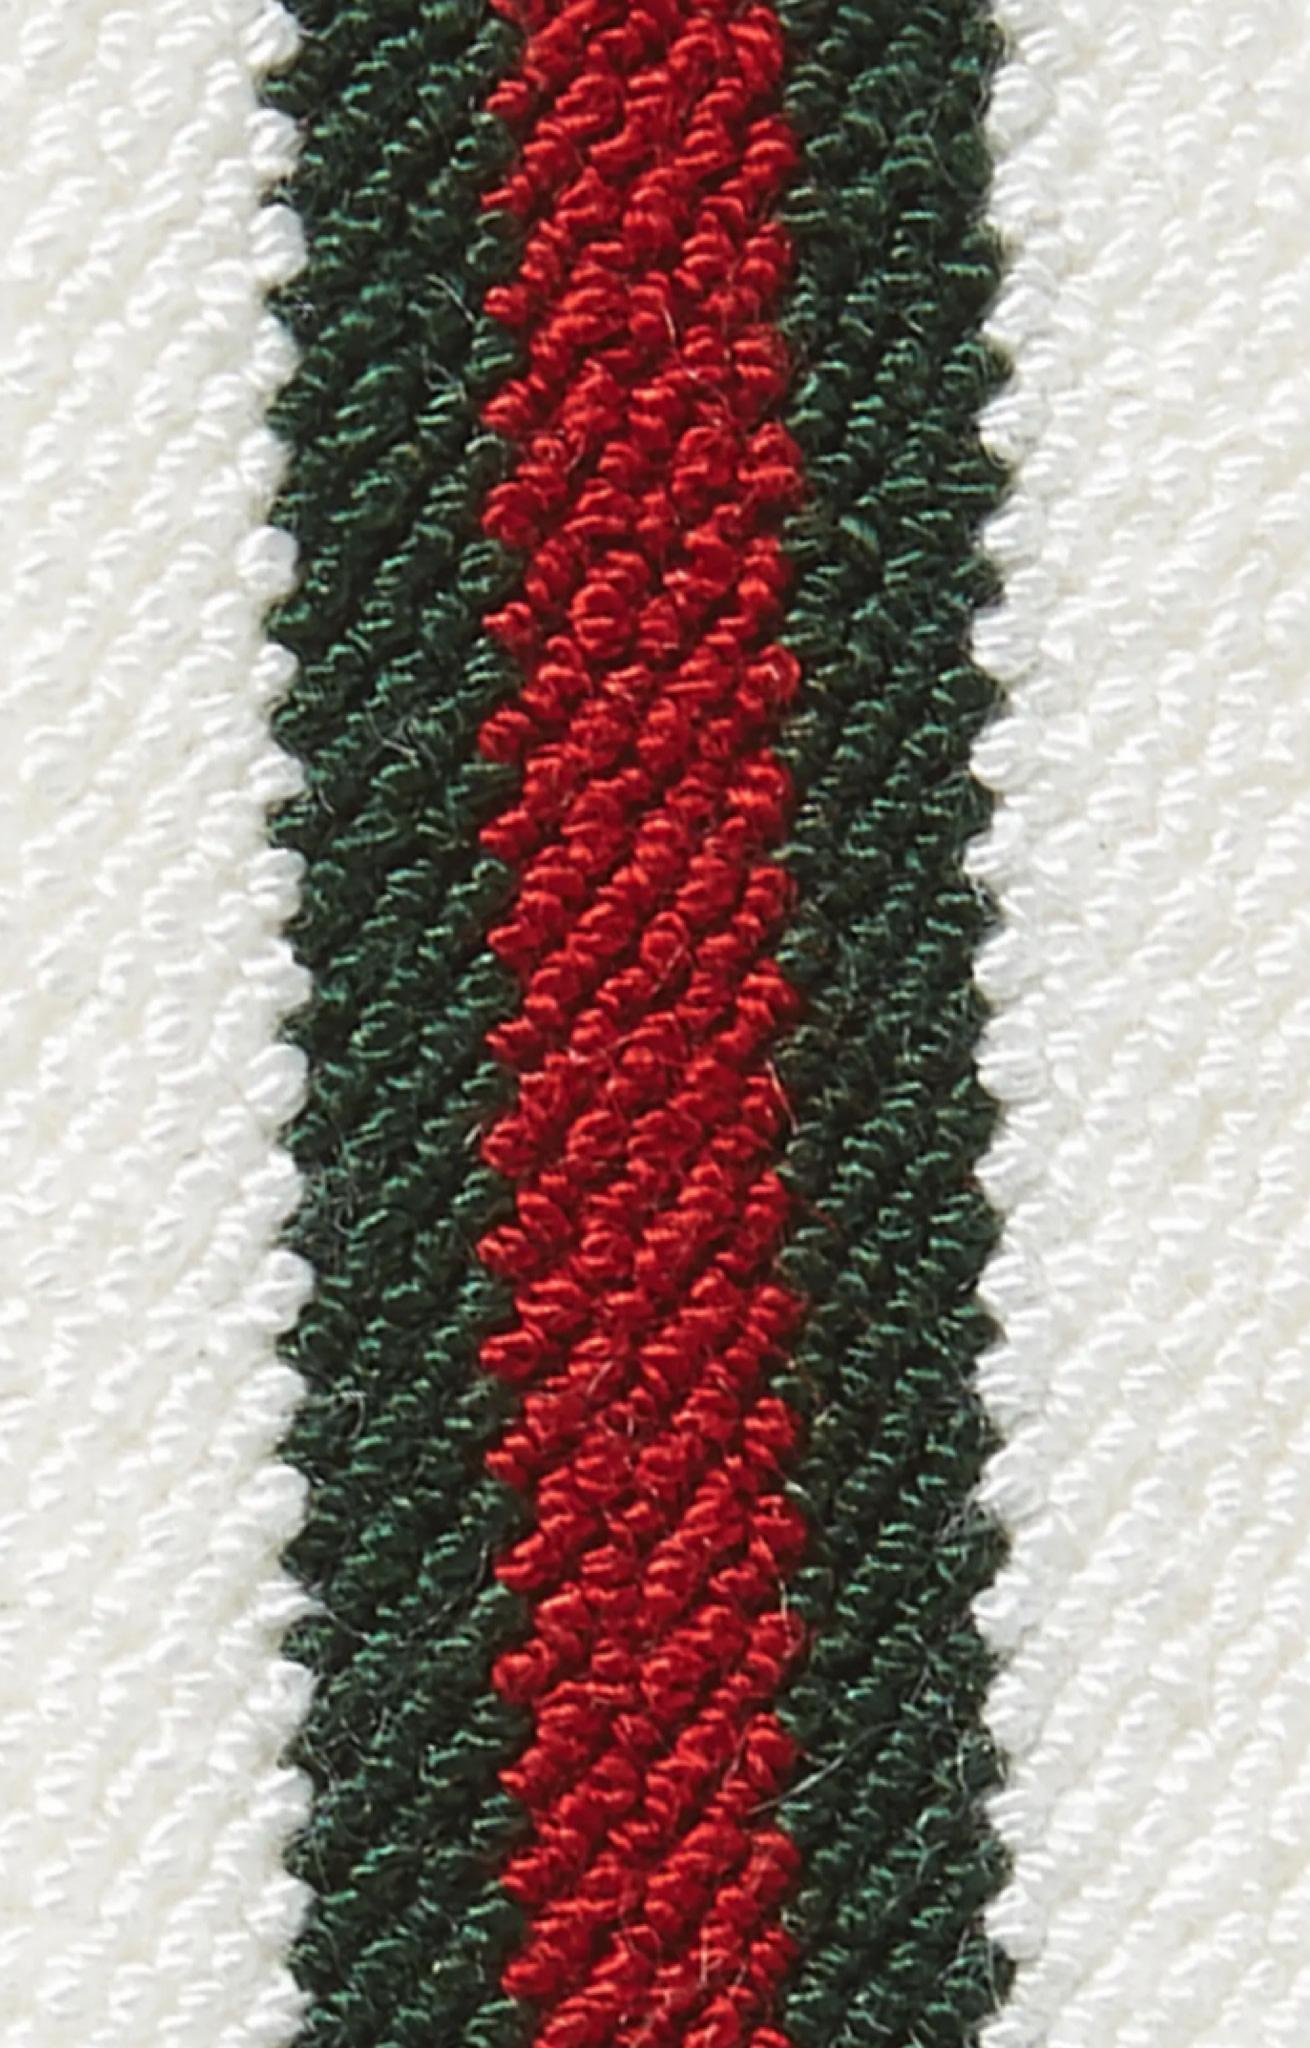 Dieses weiße elastische Stirnband ist mit einem Gucci-Streifen in Rot und Grün im Vintage-Look versehen.

FARBE: Weiß/Grün/Rot
ITEM CODE: 746045 
MATERIAL: Sythentic (Viskose/Elastan)
MASSNAHMEN:  24 x 4 cm
KOMMT MIT: Tags
ZUSTAND: